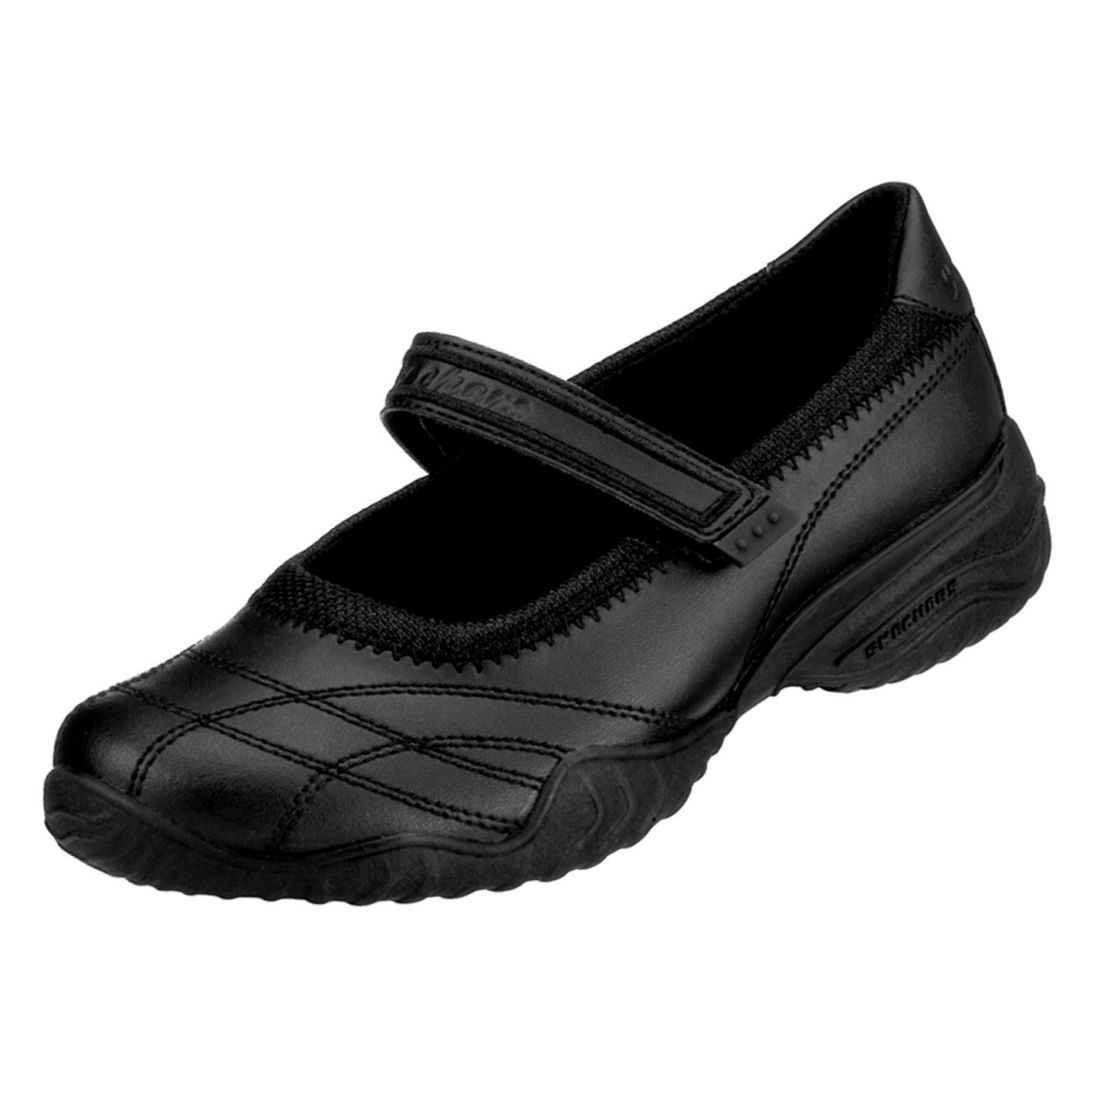 skechers girl school shoes off 65 